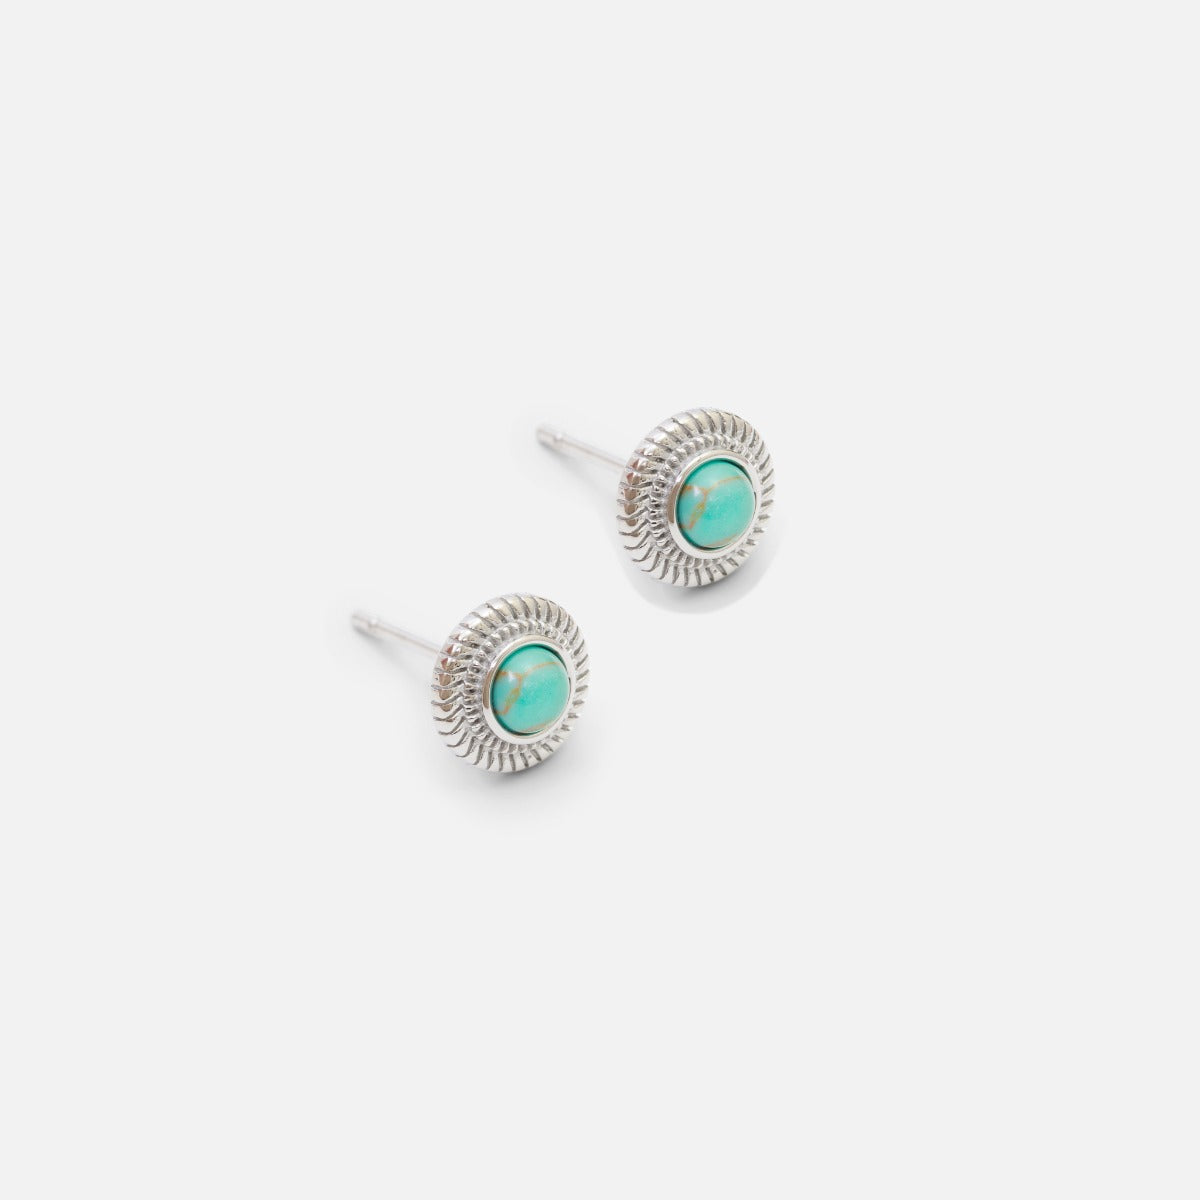 Boucles d’oreilles turquoise fixes avec contour texturé argenté en acier inoxydable